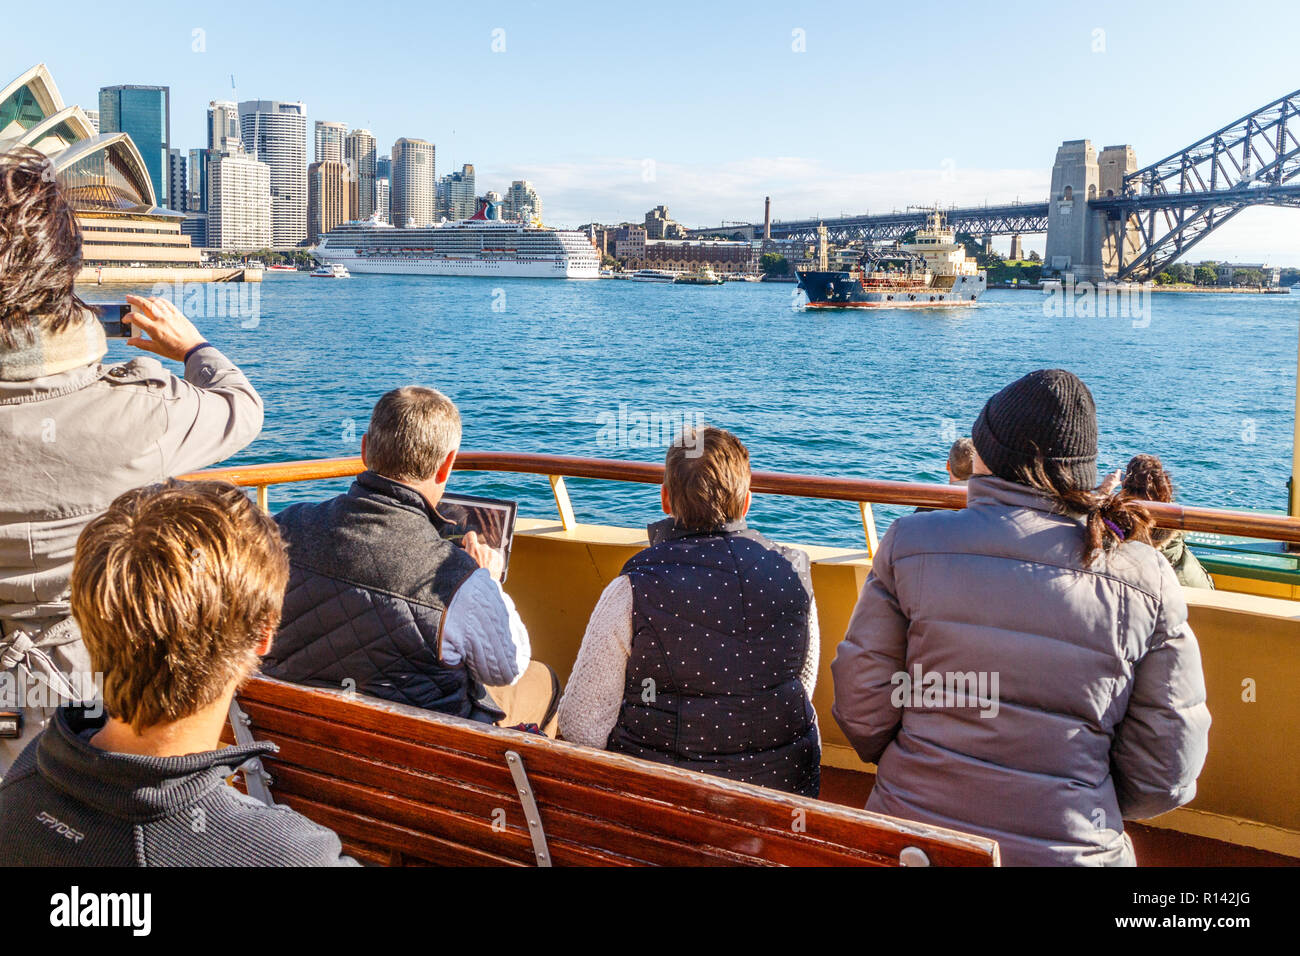 Sydney, Australien - 5. Juni 2015: Touristen an Bord der Manly Fähre. Die Fähre ist eine beliebte Touristenattraktion. Stockfoto